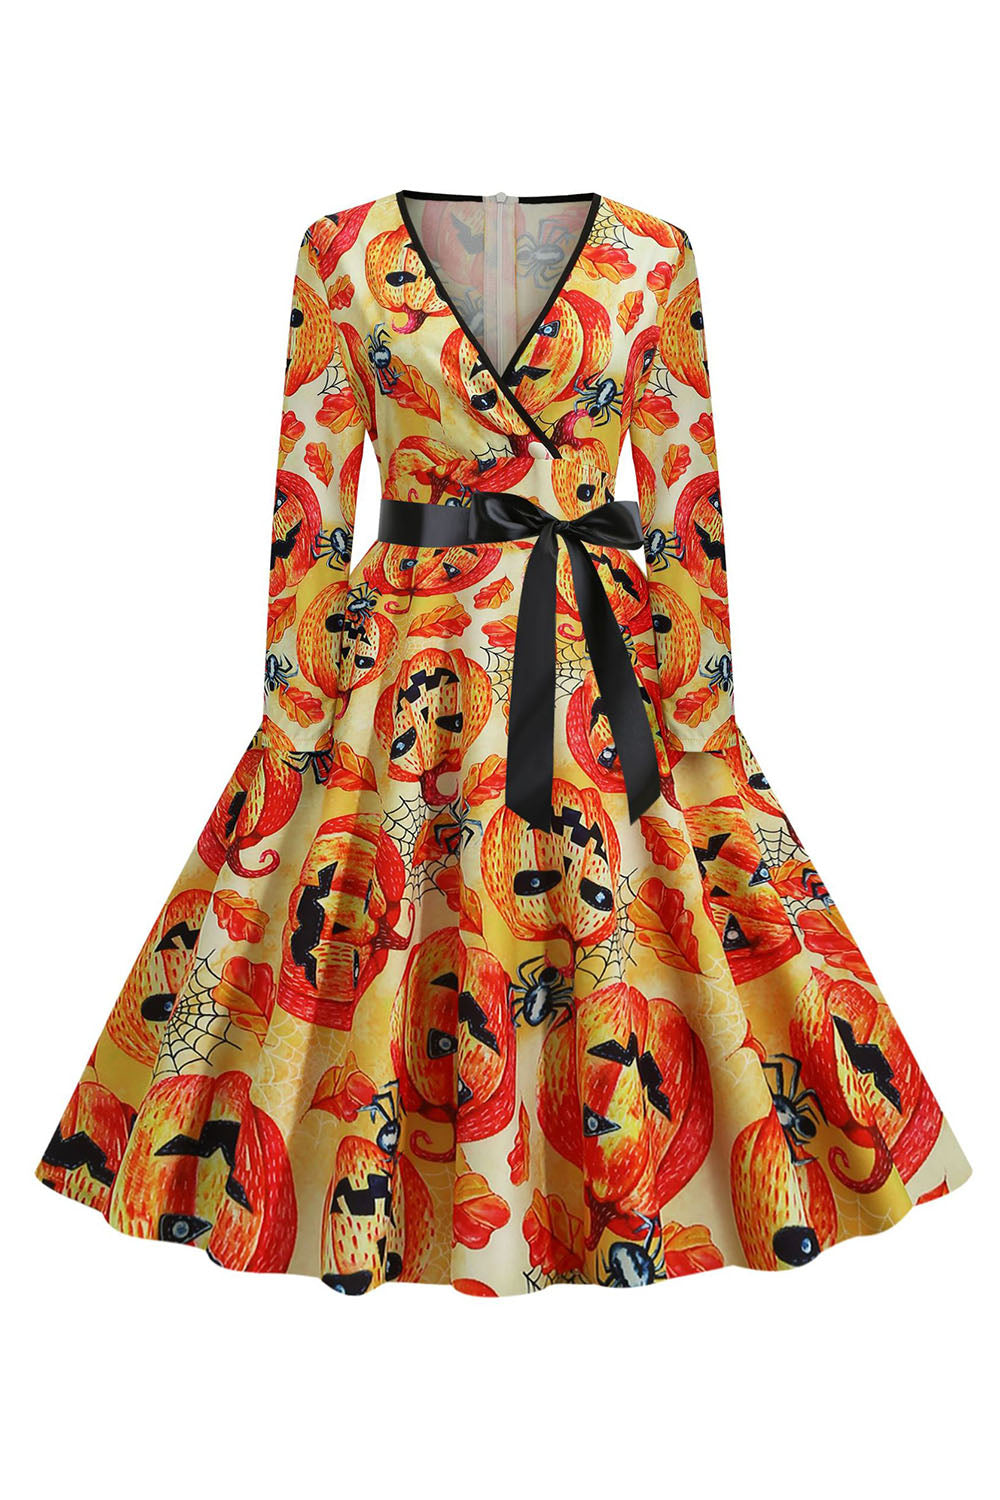 Orange Latern bedrucktes Halloween Vintage 1950er Jahre Kleid mit Ärmeln